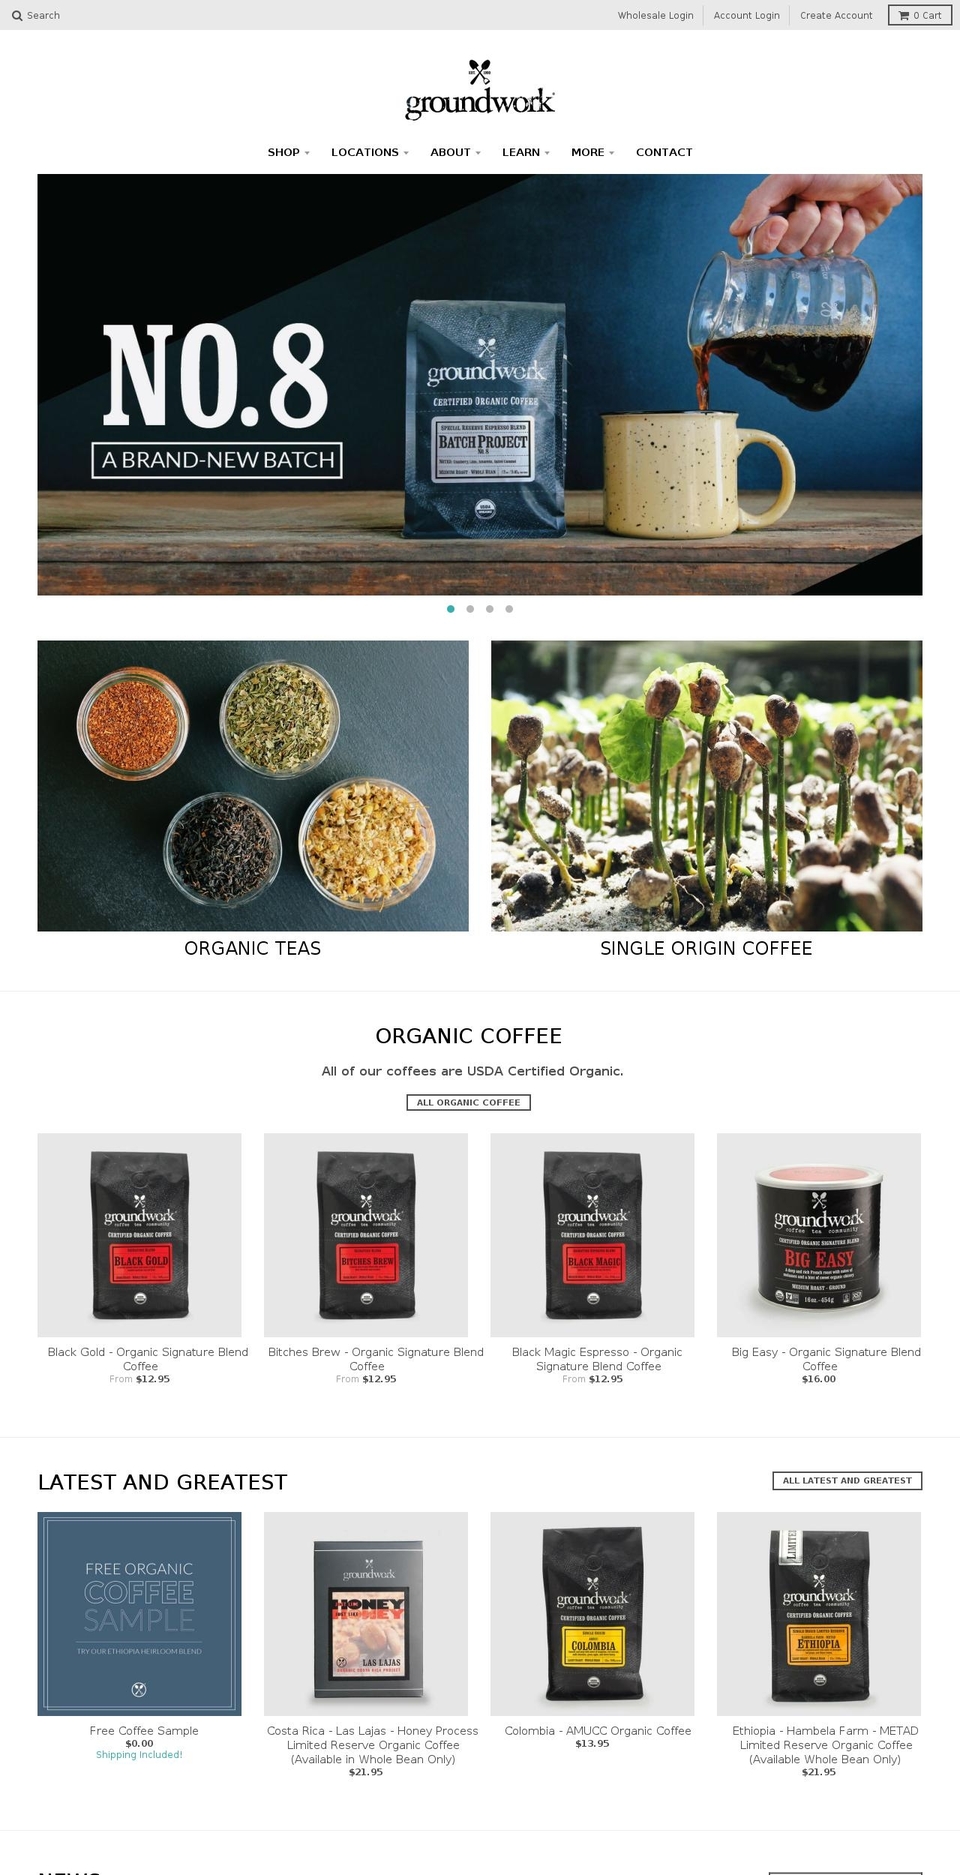 groundworkcoffee.com shopify website screenshot